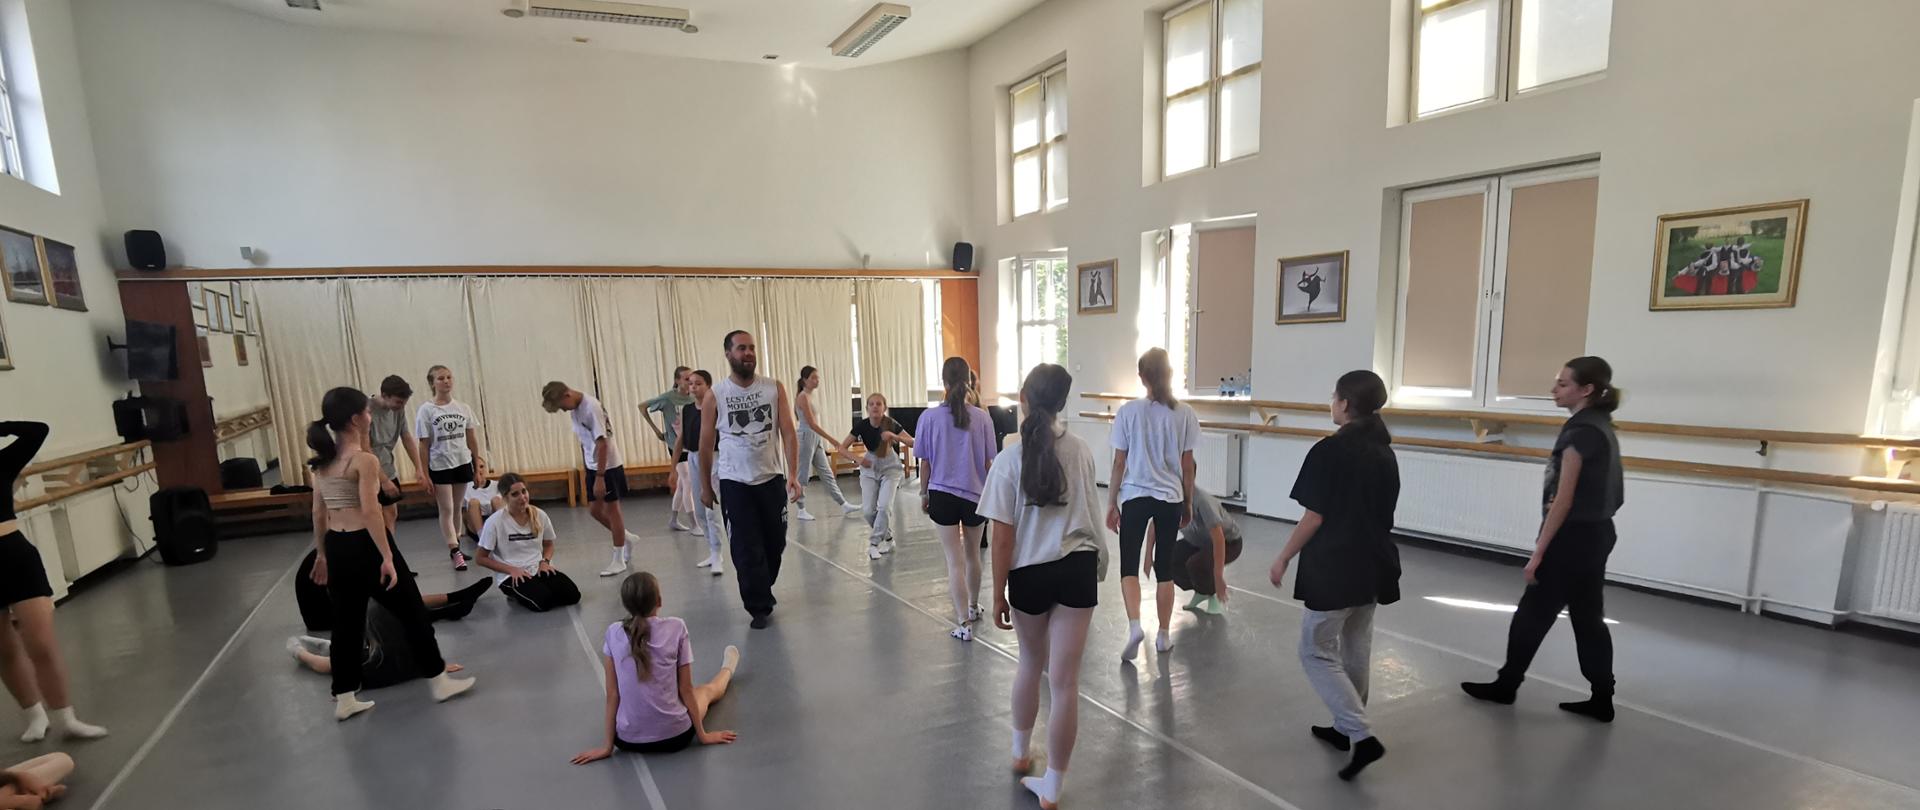 uczniowie siedzą na podłodze sali baletowej warsztaty "Move on togheter"